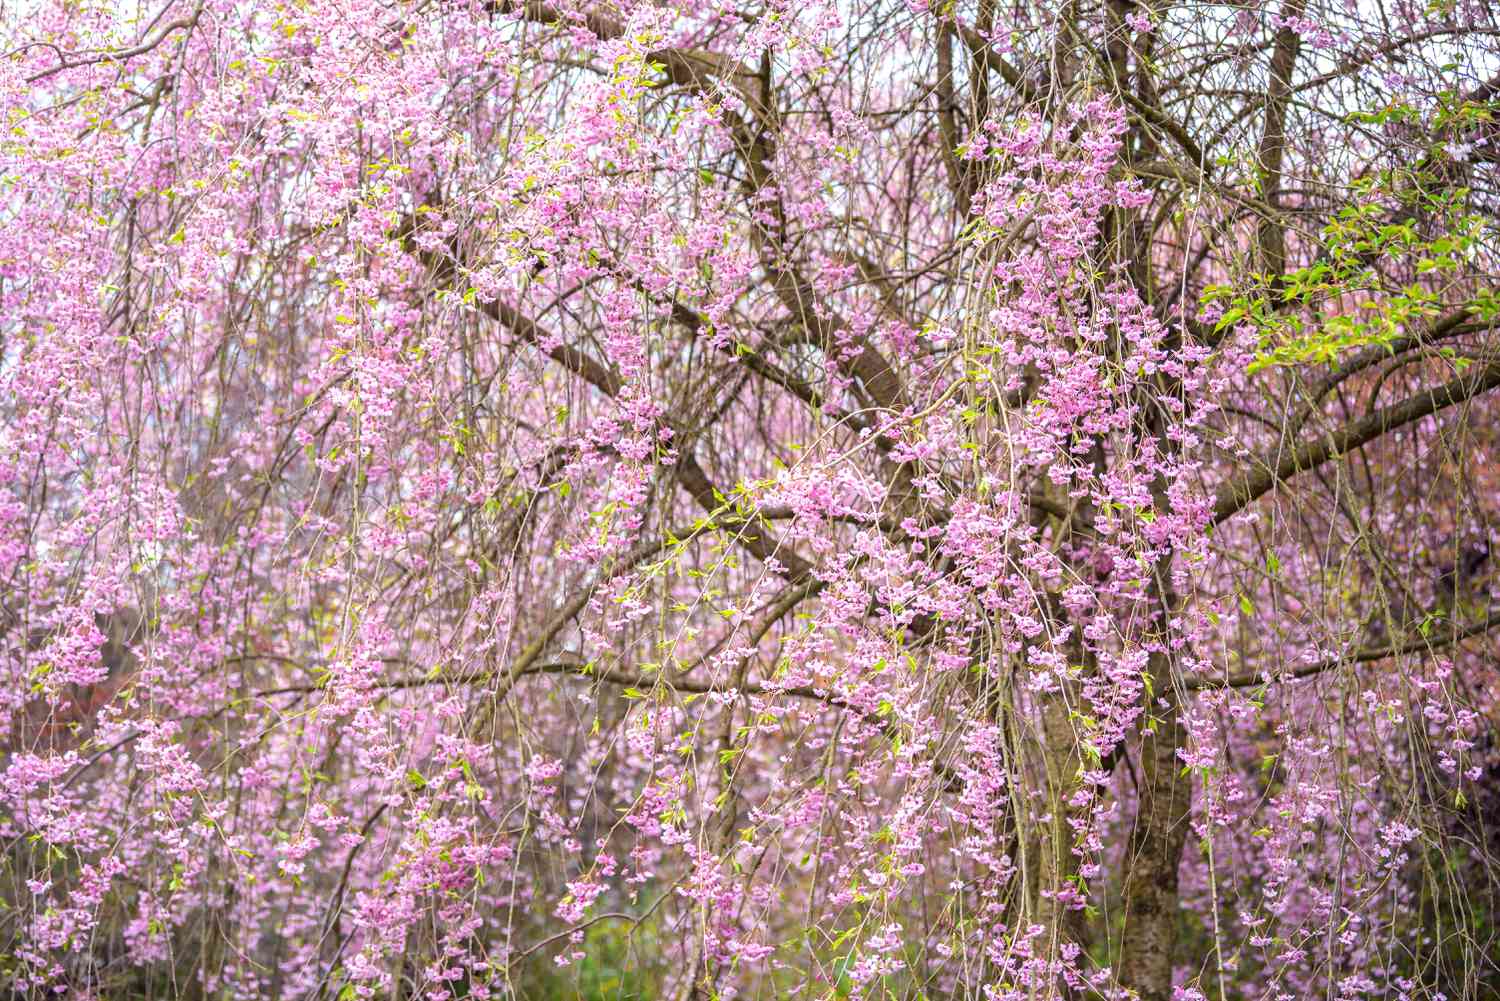 Cerejeira com galhos chorosos cheios de flores cor-de-rosa